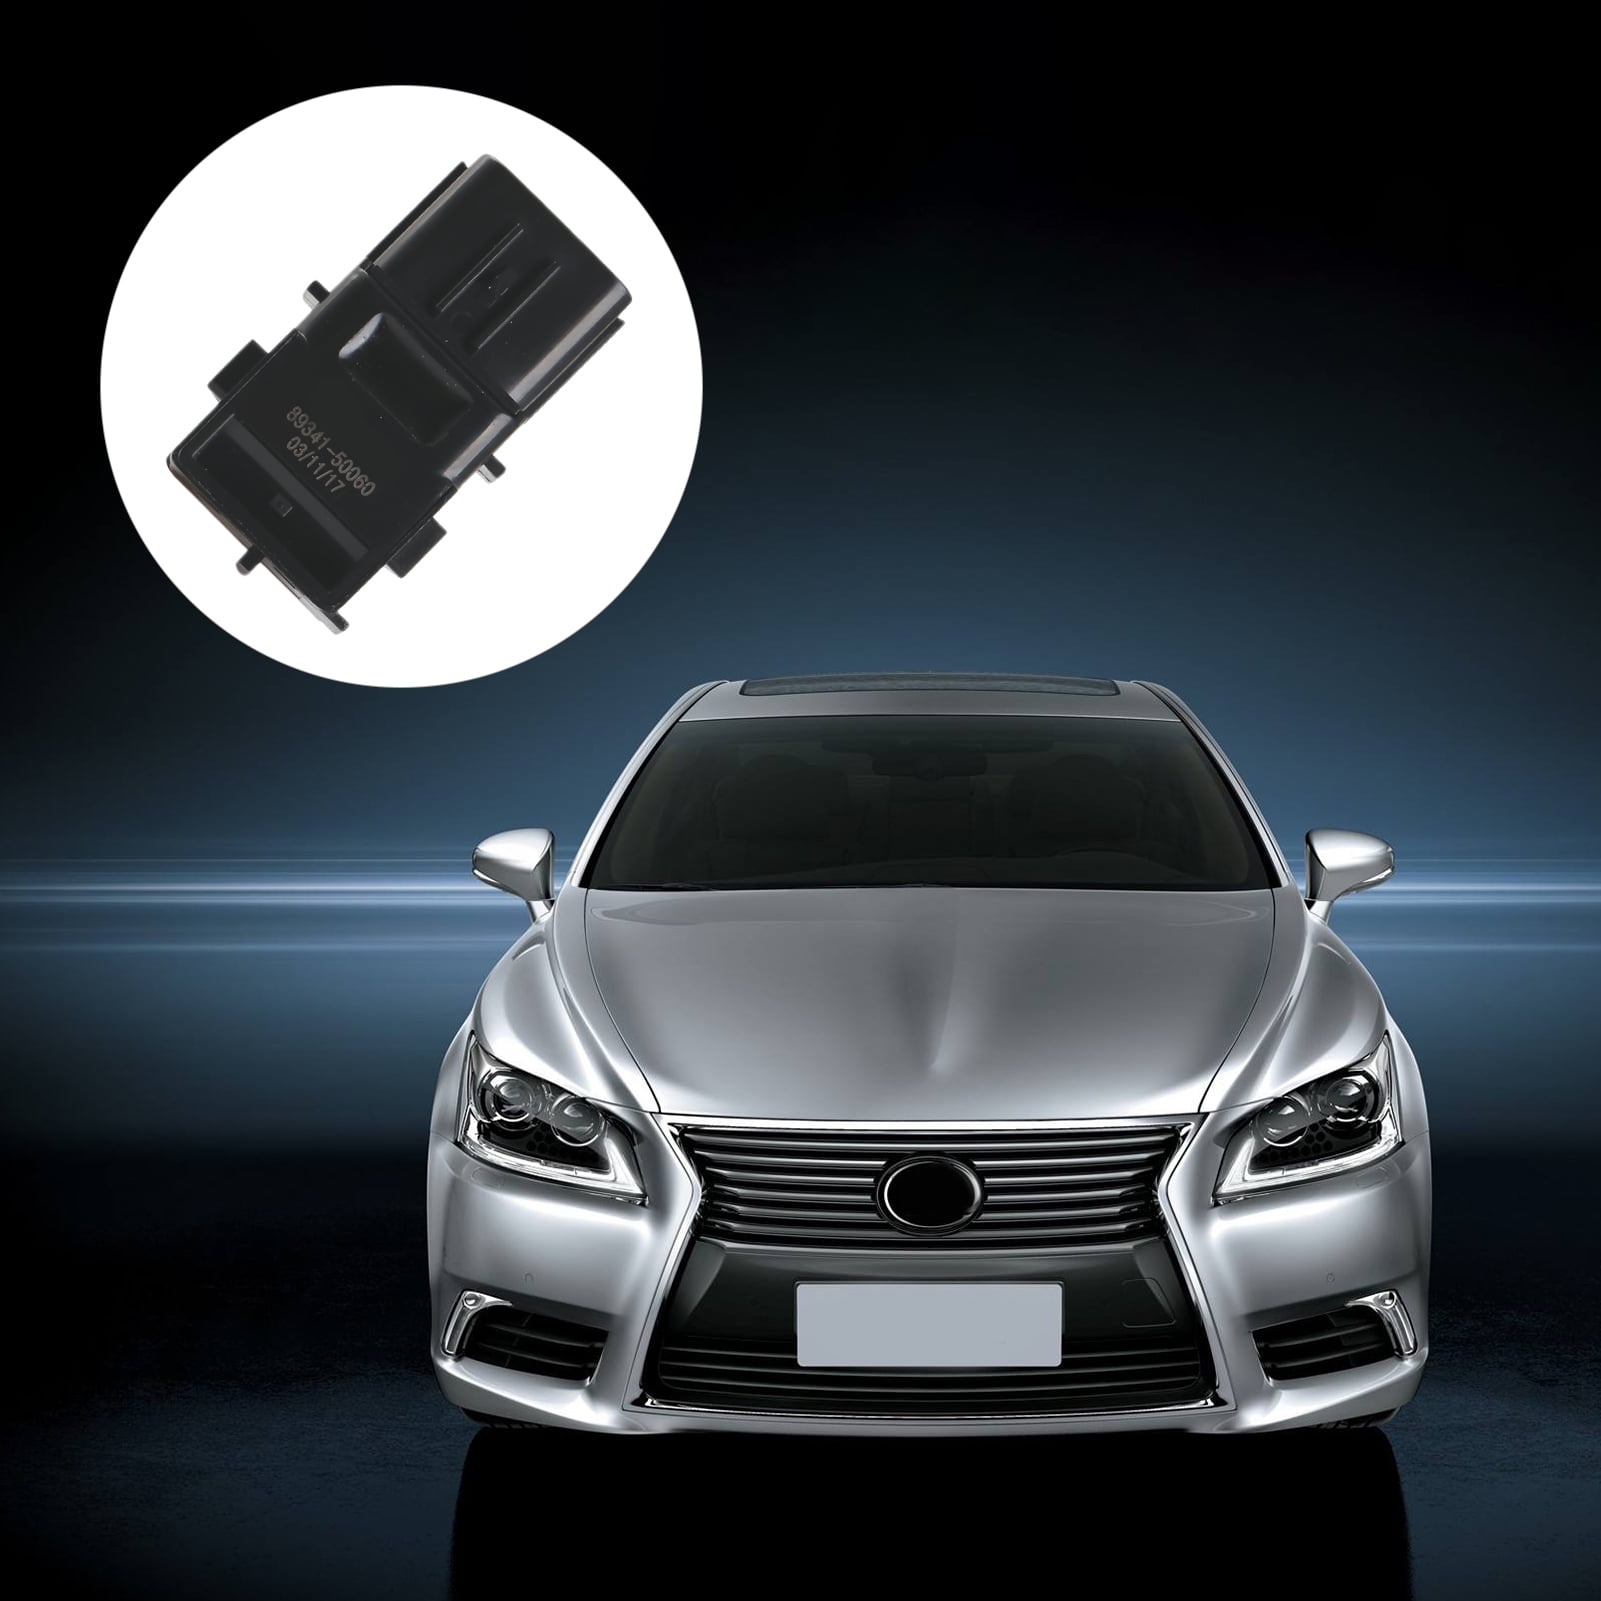 INEEDUP Reverse Backup Parking Sensor Park Assist Sensor Fit for Lexus GS300 GS350 GS430 GS450h GS460 IS F IS250 IS350 LS430